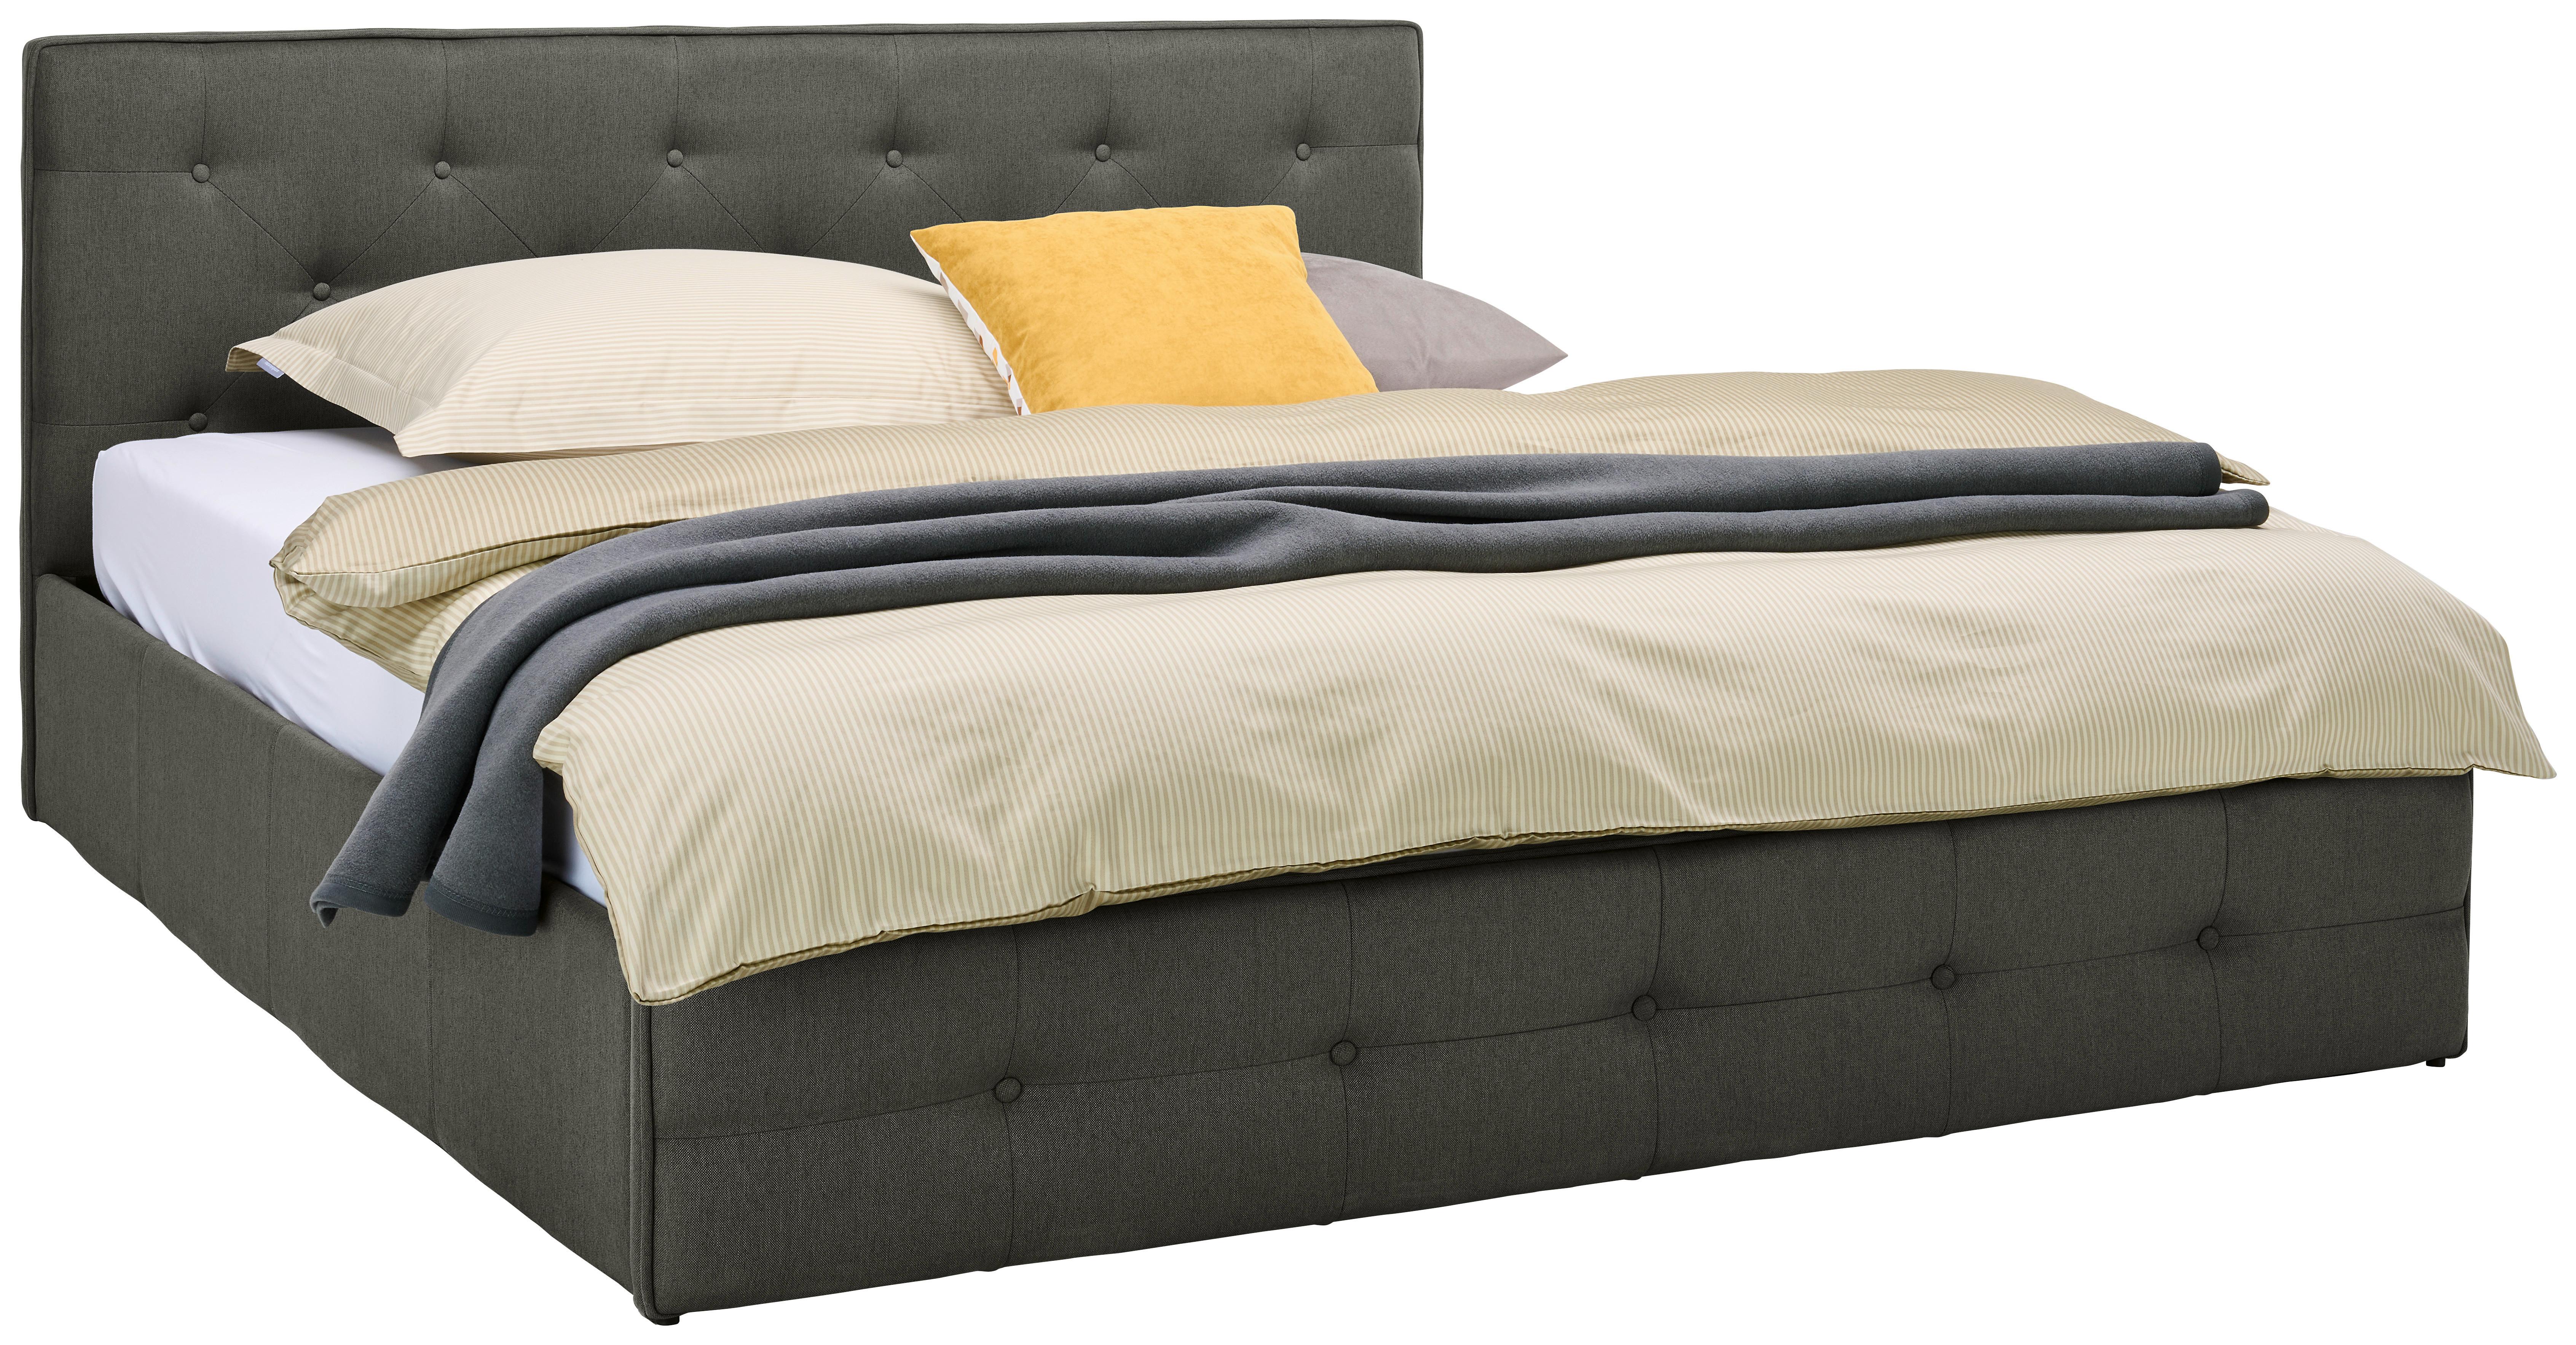 Čalúnená posteľ PADUA - tmavosivá, Moderný, drevo/textil (180/200cm) - Carryhome